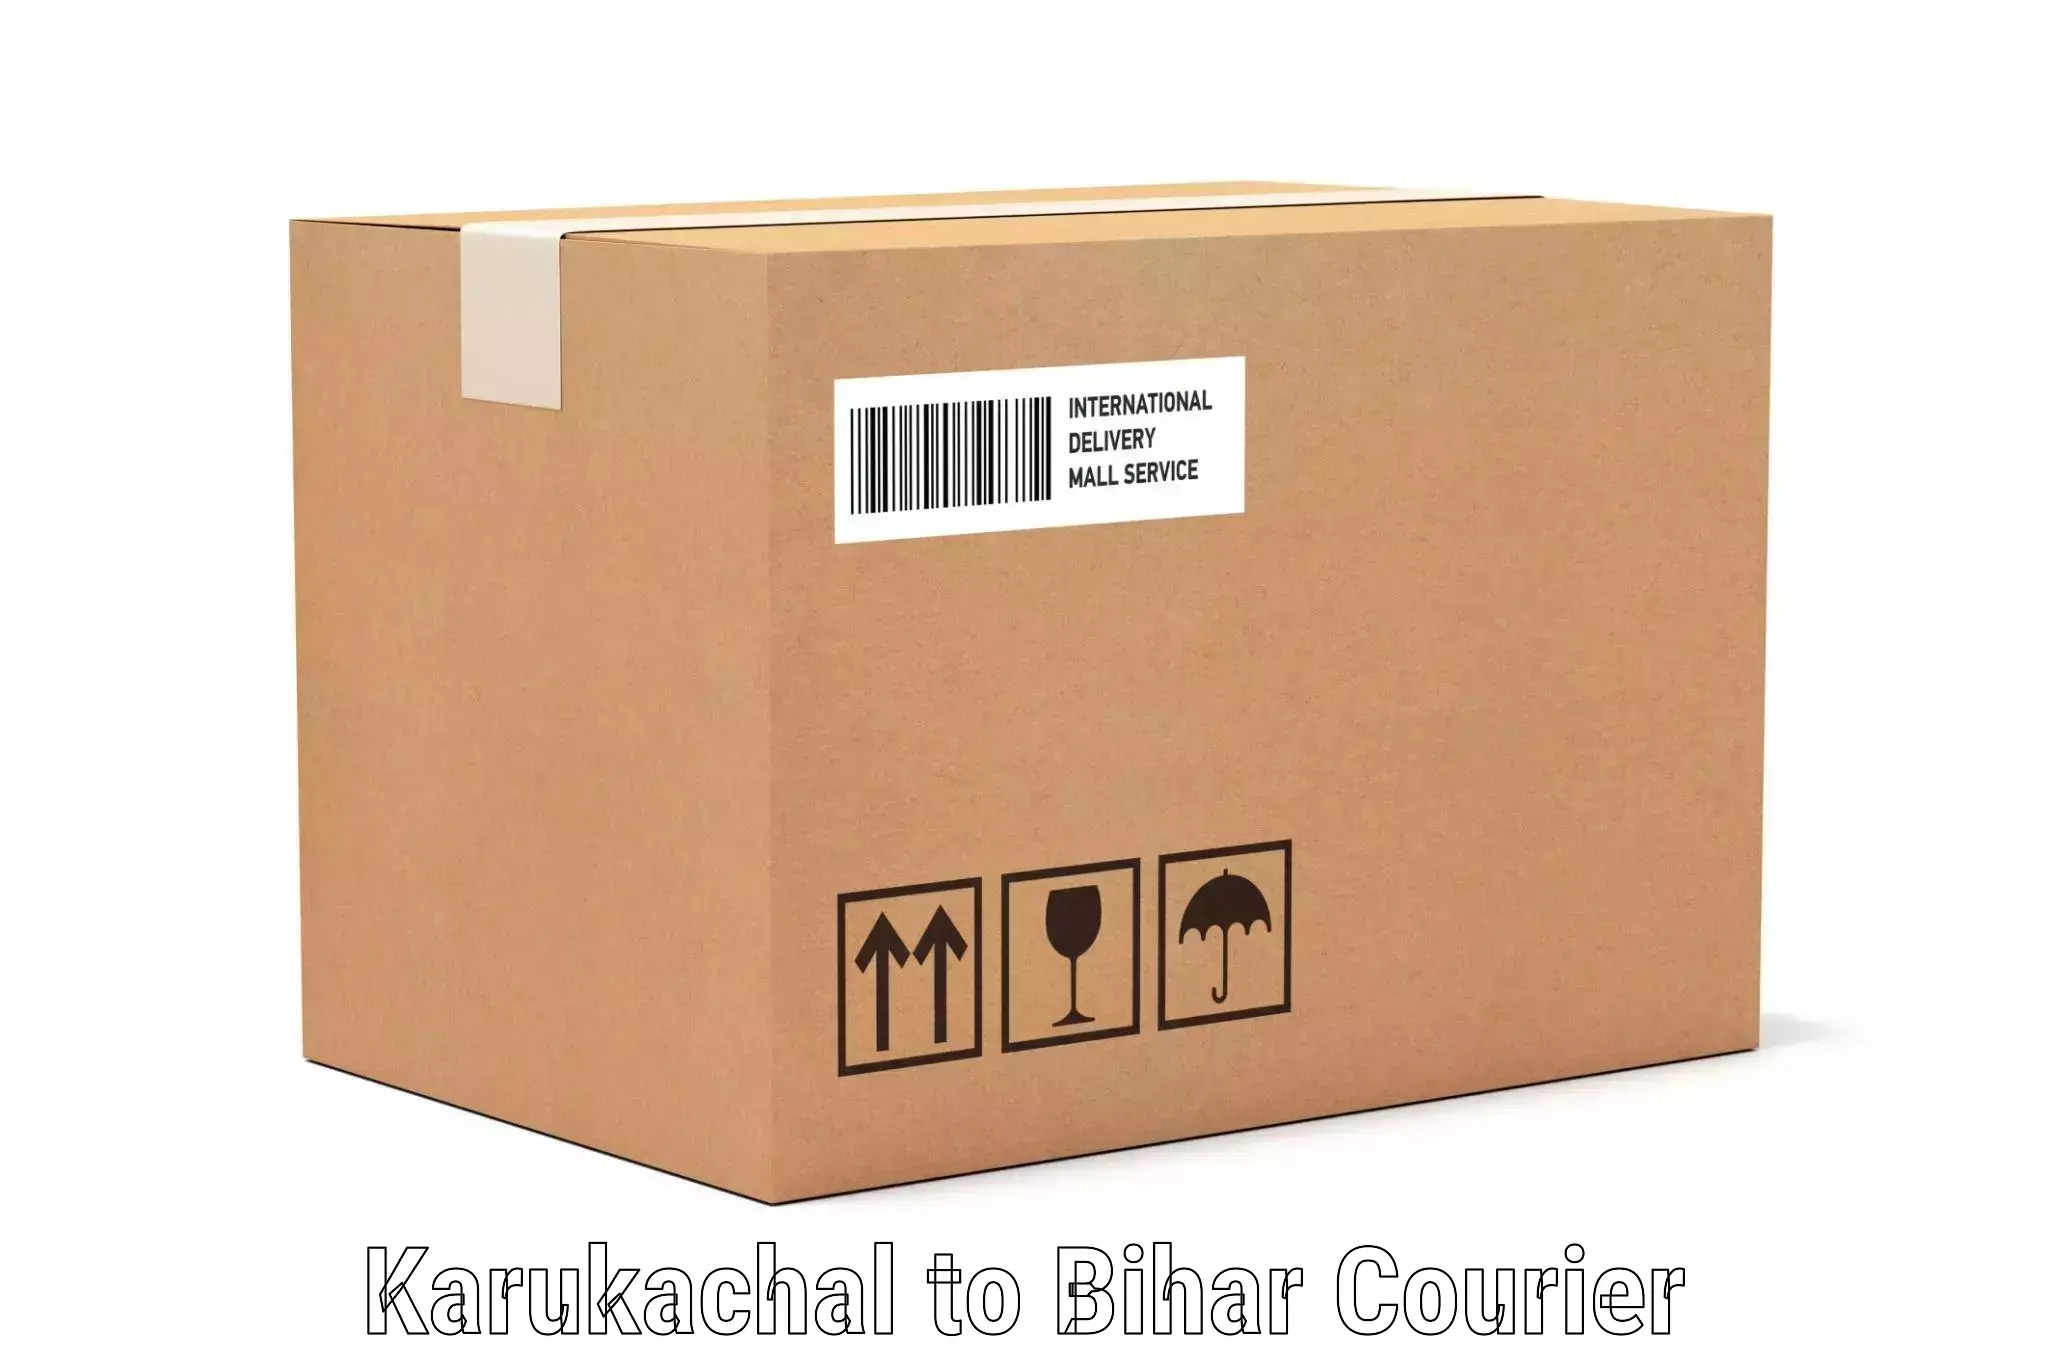 Baggage delivery optimization Karukachal to Maranga